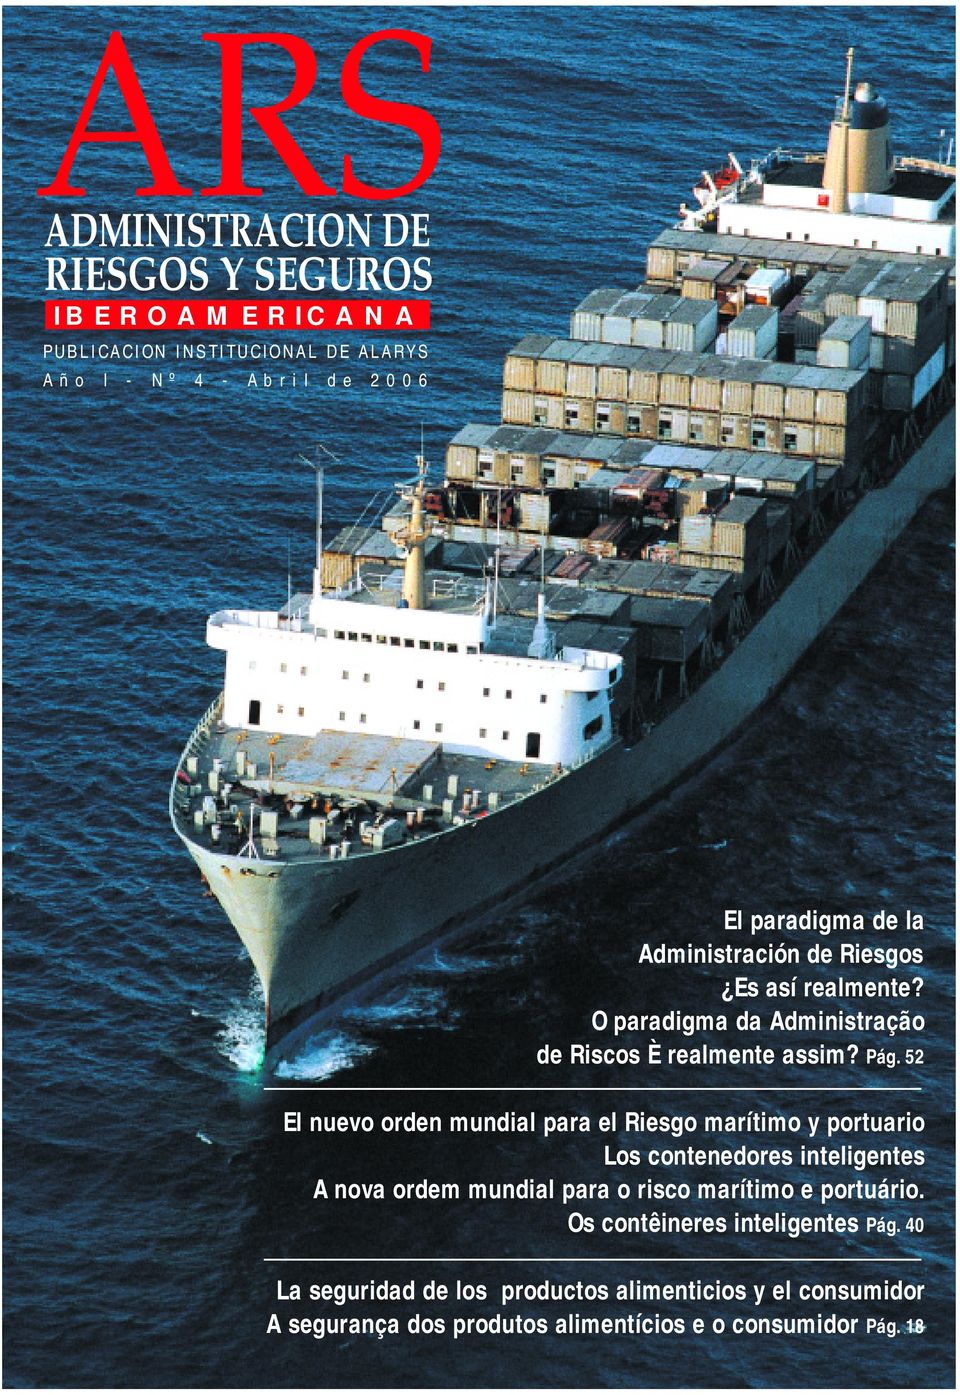 52 El nuevo orden mundial para el Riesgo marítimo y portuario Los contenedores inteligentes A nova ordem mundial para o risco marítimo e portuário.